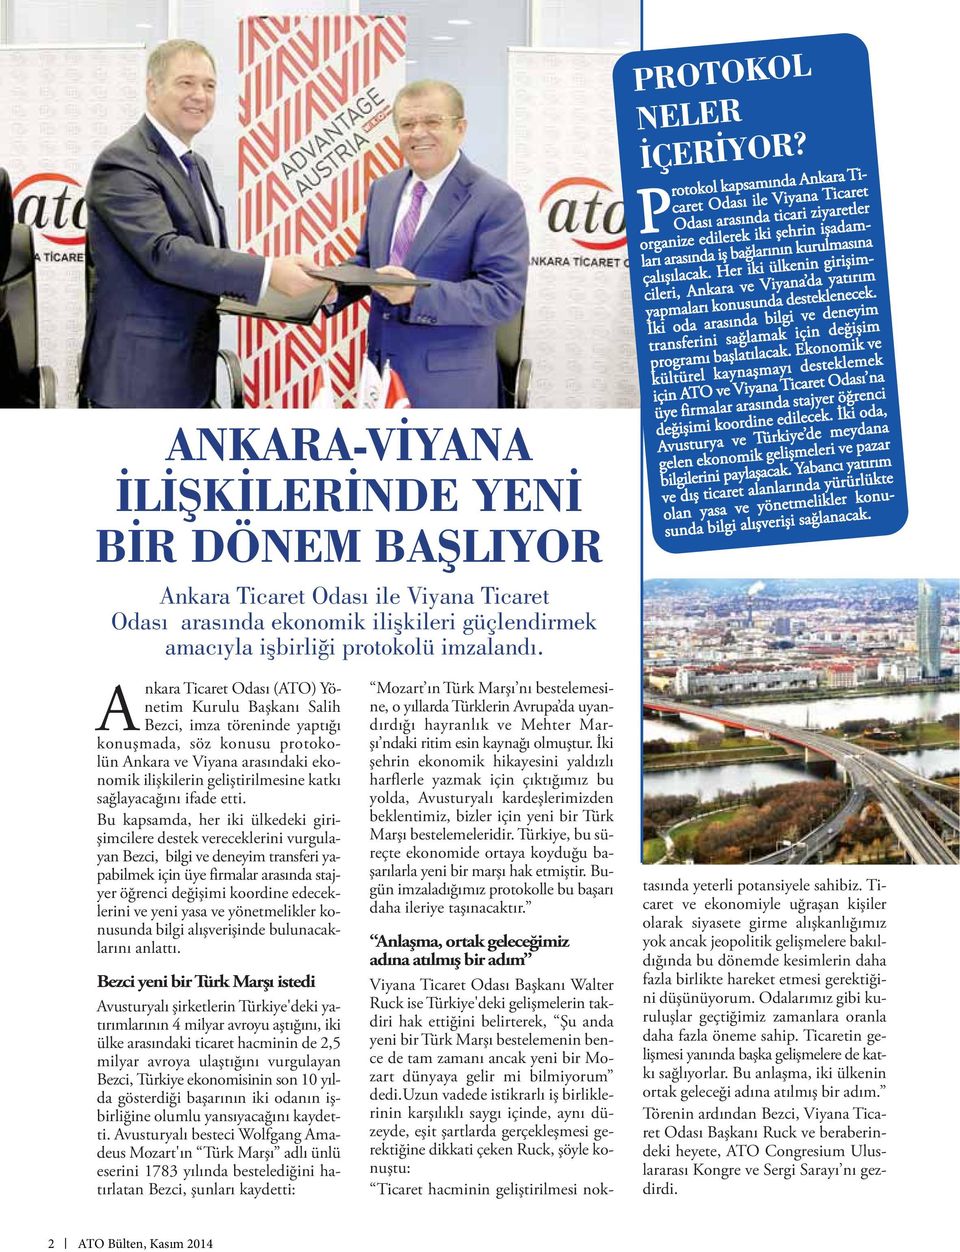 P rotokol kapsamında Ankara Ticaret Odası ile Viyana Ticaret Odası arasında ticari ziyaretler organize edilerek iki şehrin işadamları arasında iş bağlarının kurulmasına çalışılacak.